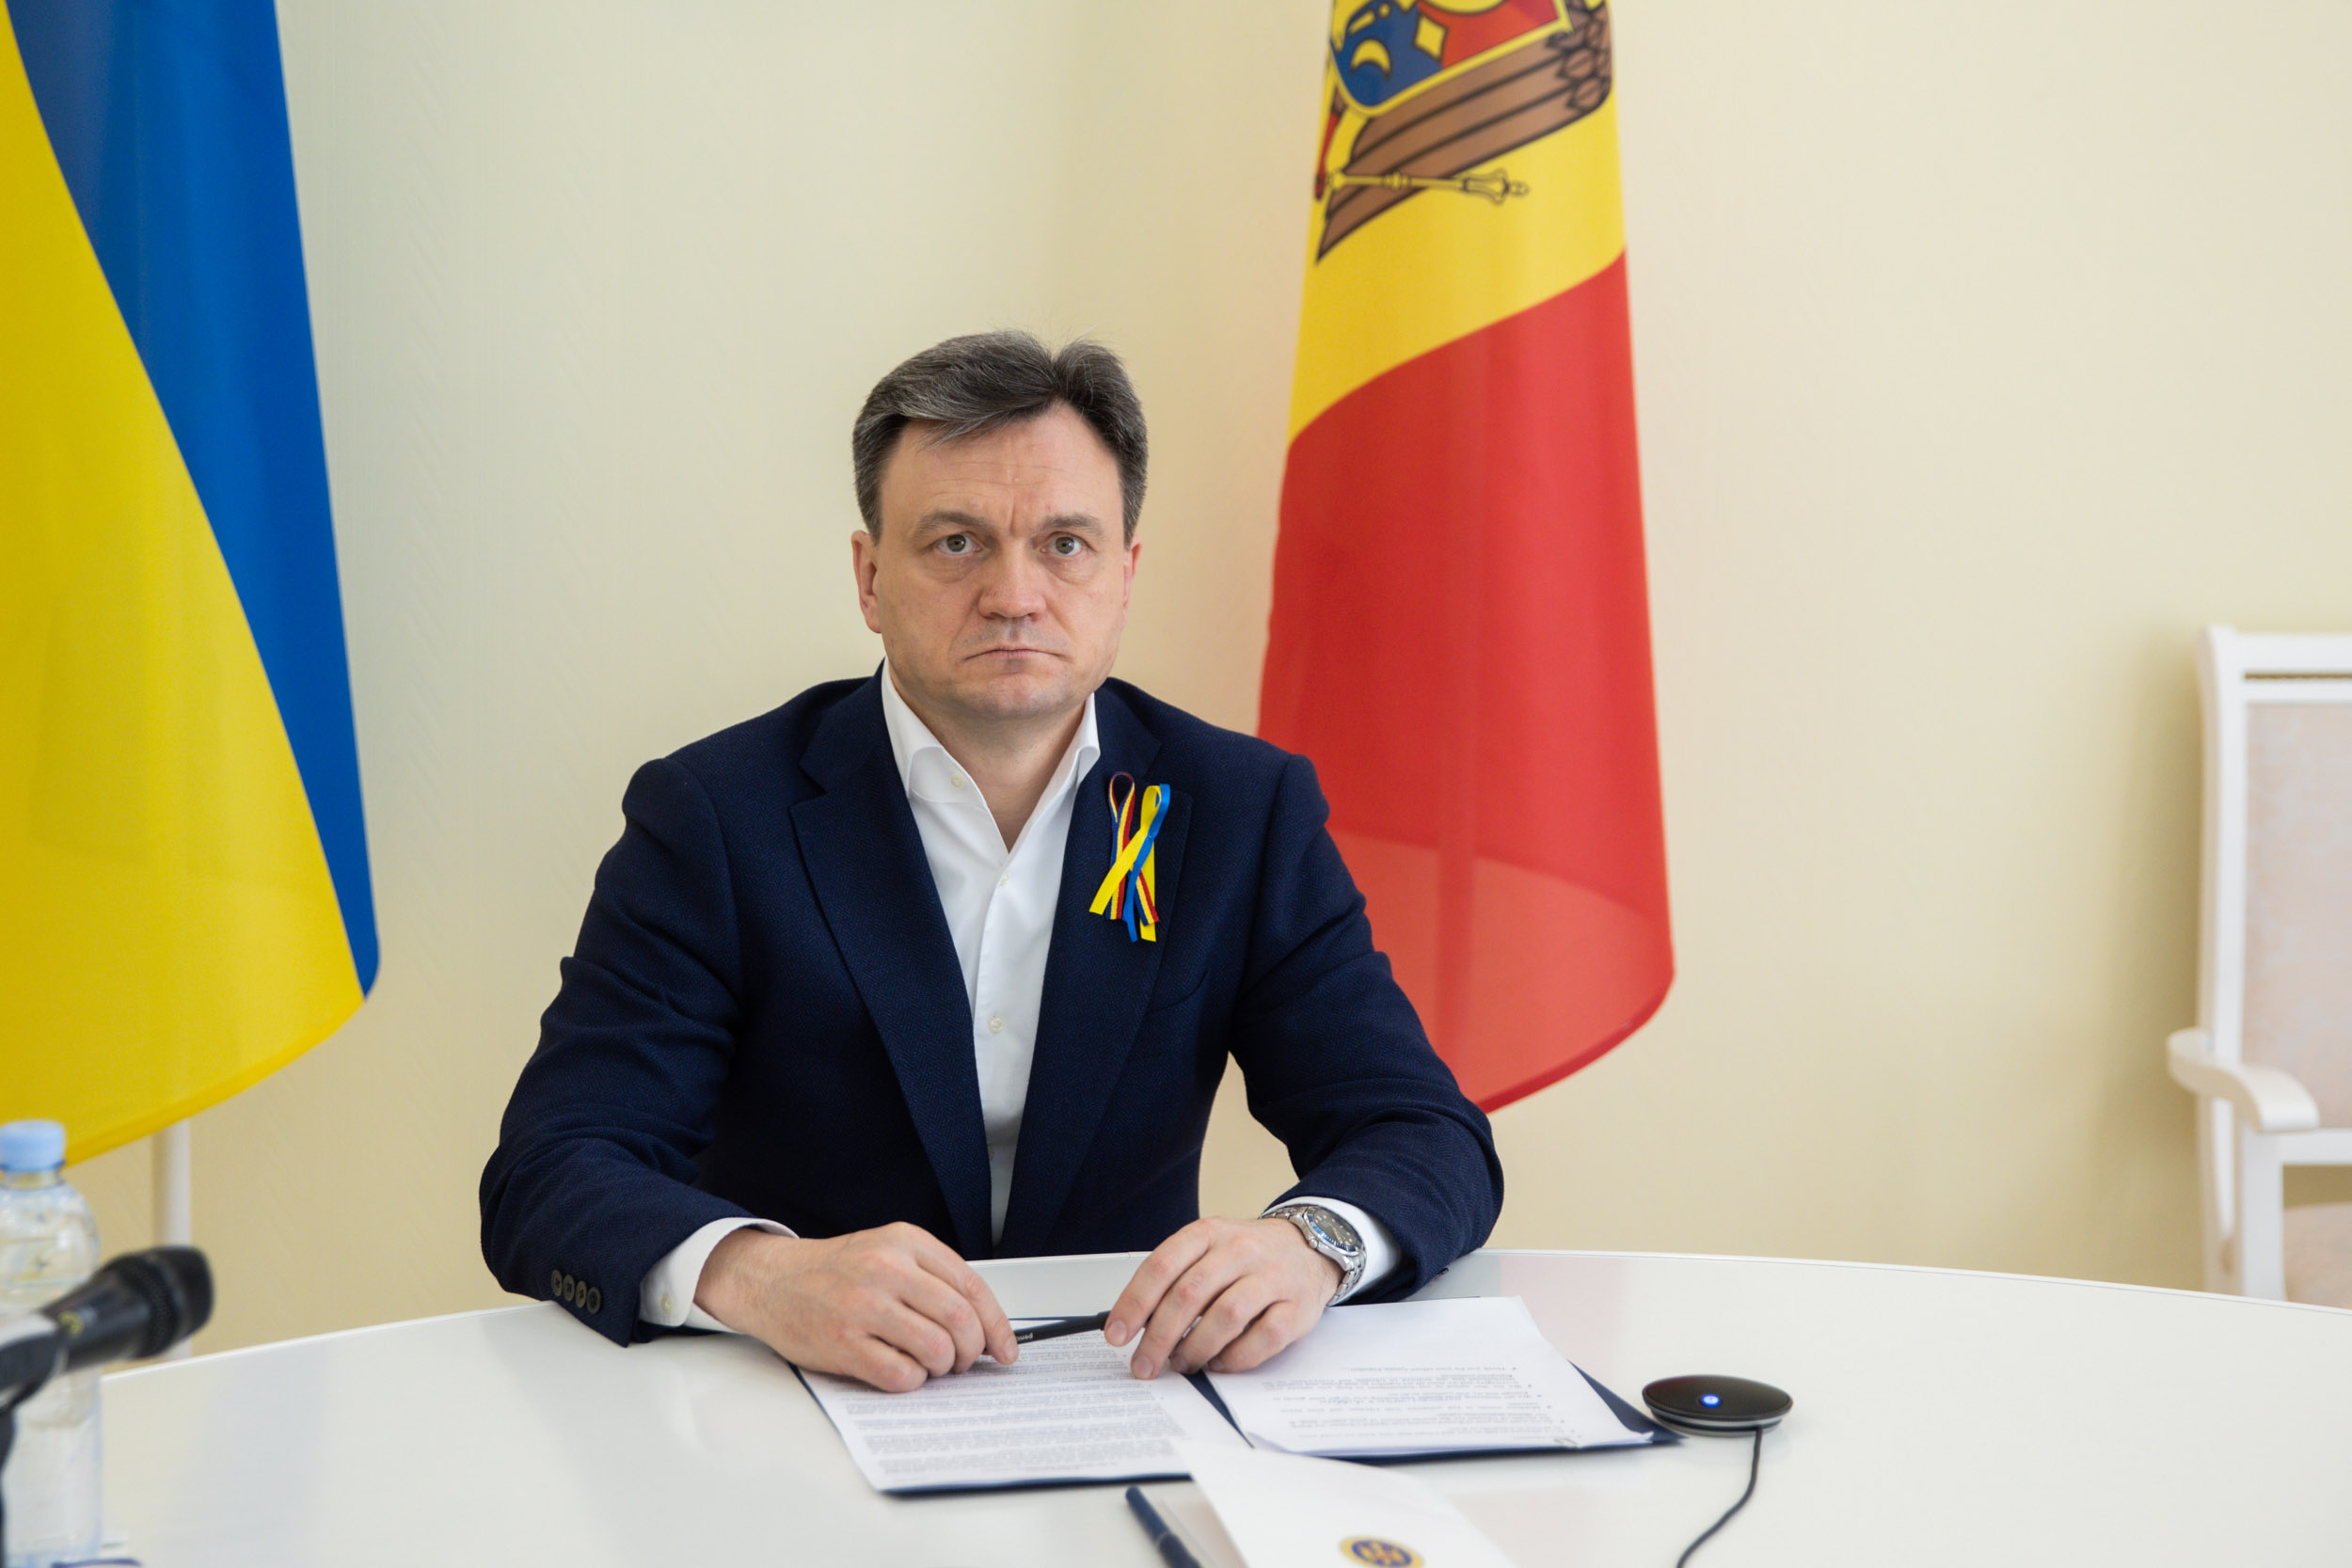 (VIDEO) Dorin Recean, în discuție cu omologul său ucrainean: „Rămânem solidari cu Ucraina și poporul ei”